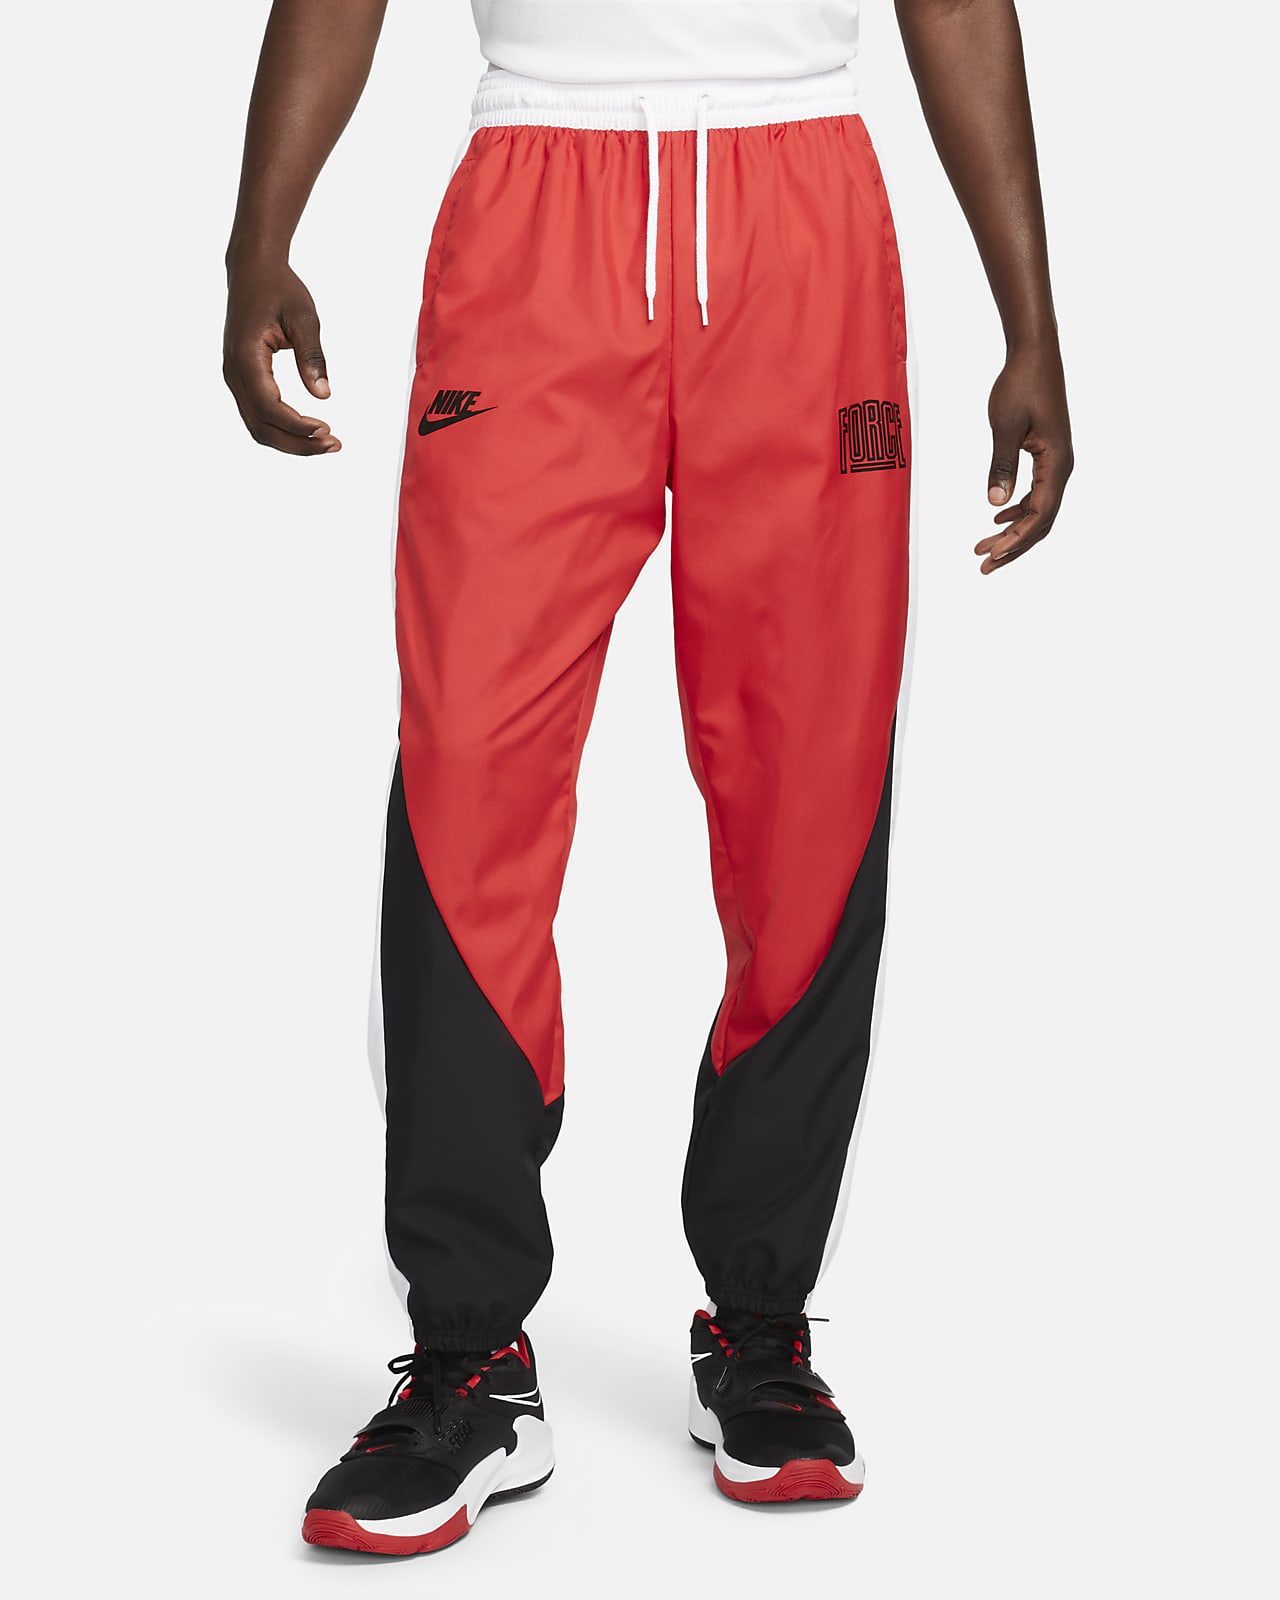 Nike Starting 5 Men's Basketball Trousers